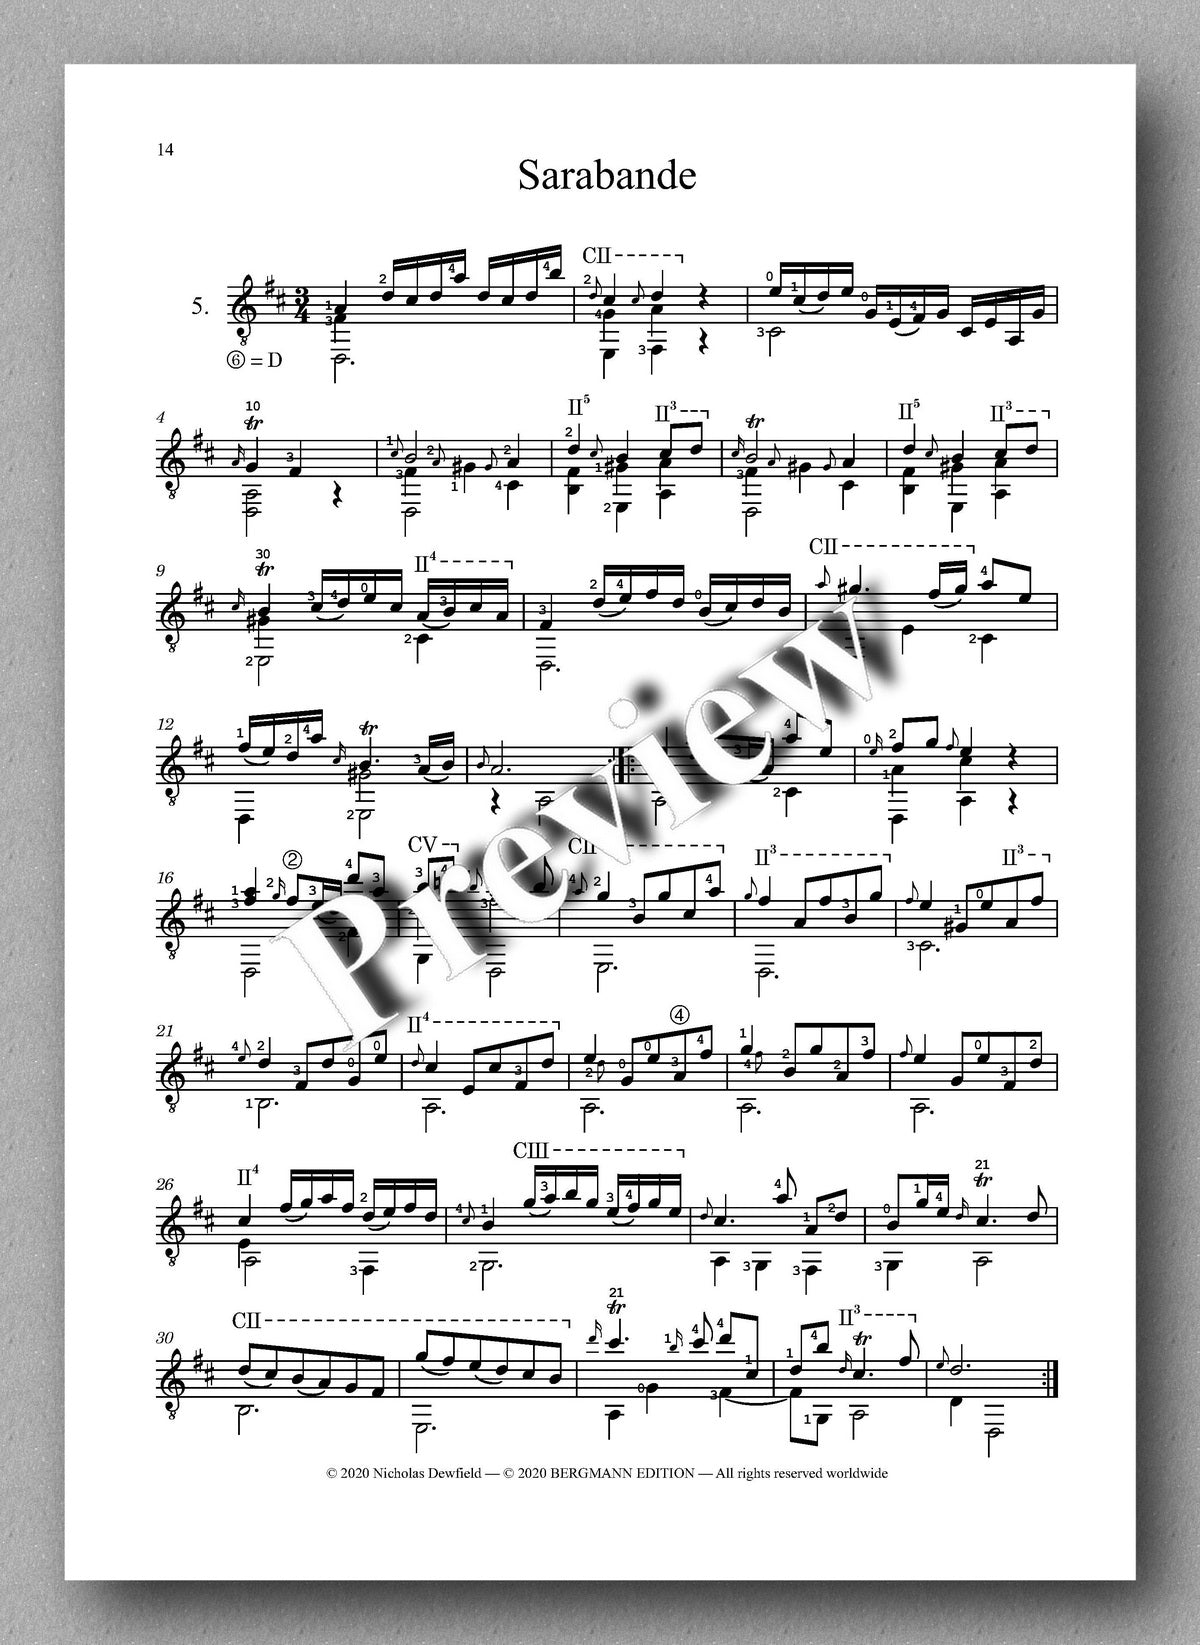 Weiss-Dewfield, Sonata No. 2 - Sarabande